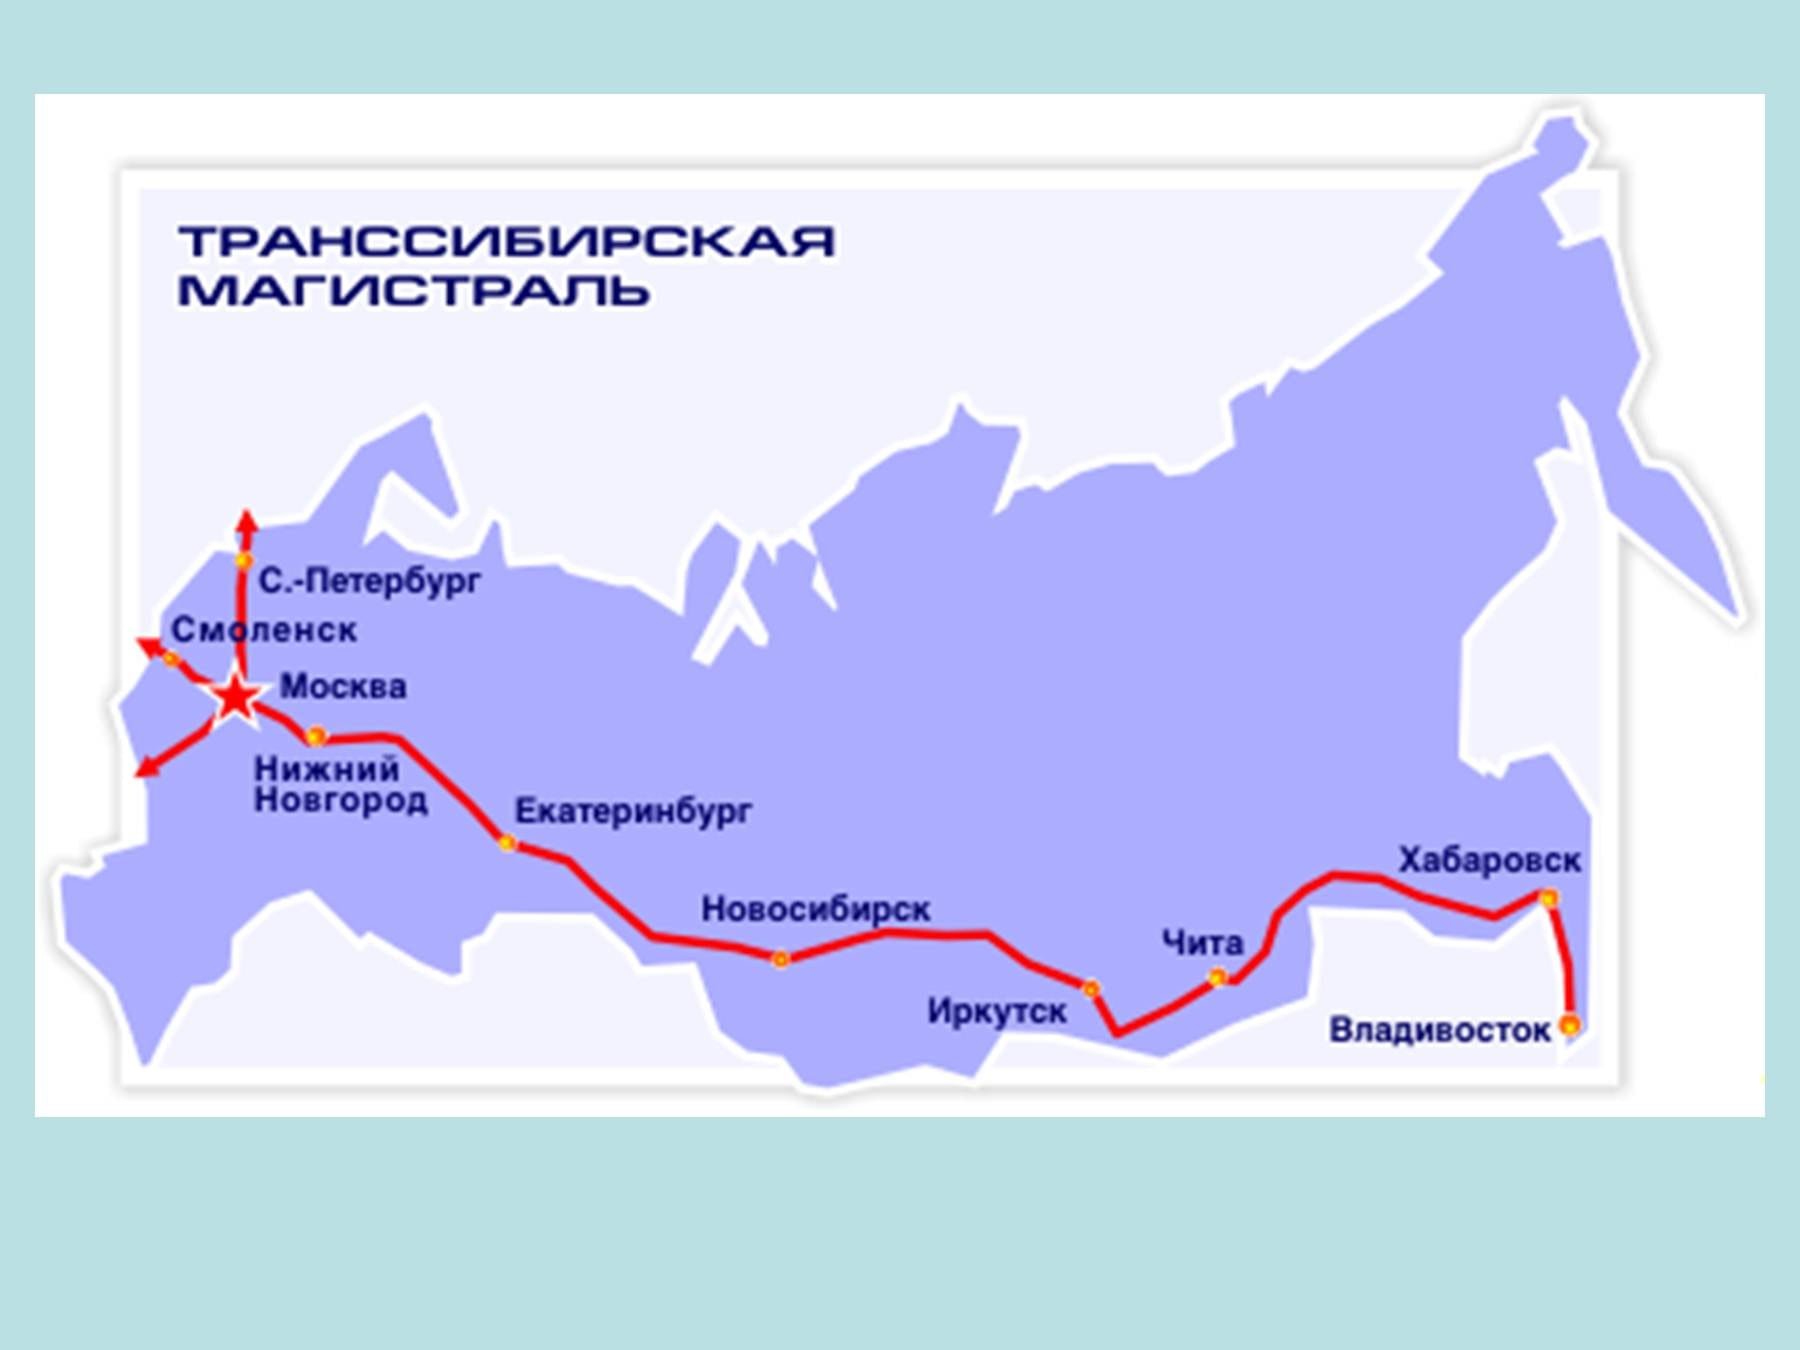 Транссибирская магистраль через какие крупные города проходит. Транссибирская магистраль города. Транссибирская магистраль протяженность. Транссиб Железнодорожная магистраль. Транссибирская Железнодорожная магистраль на карте России 19 века.